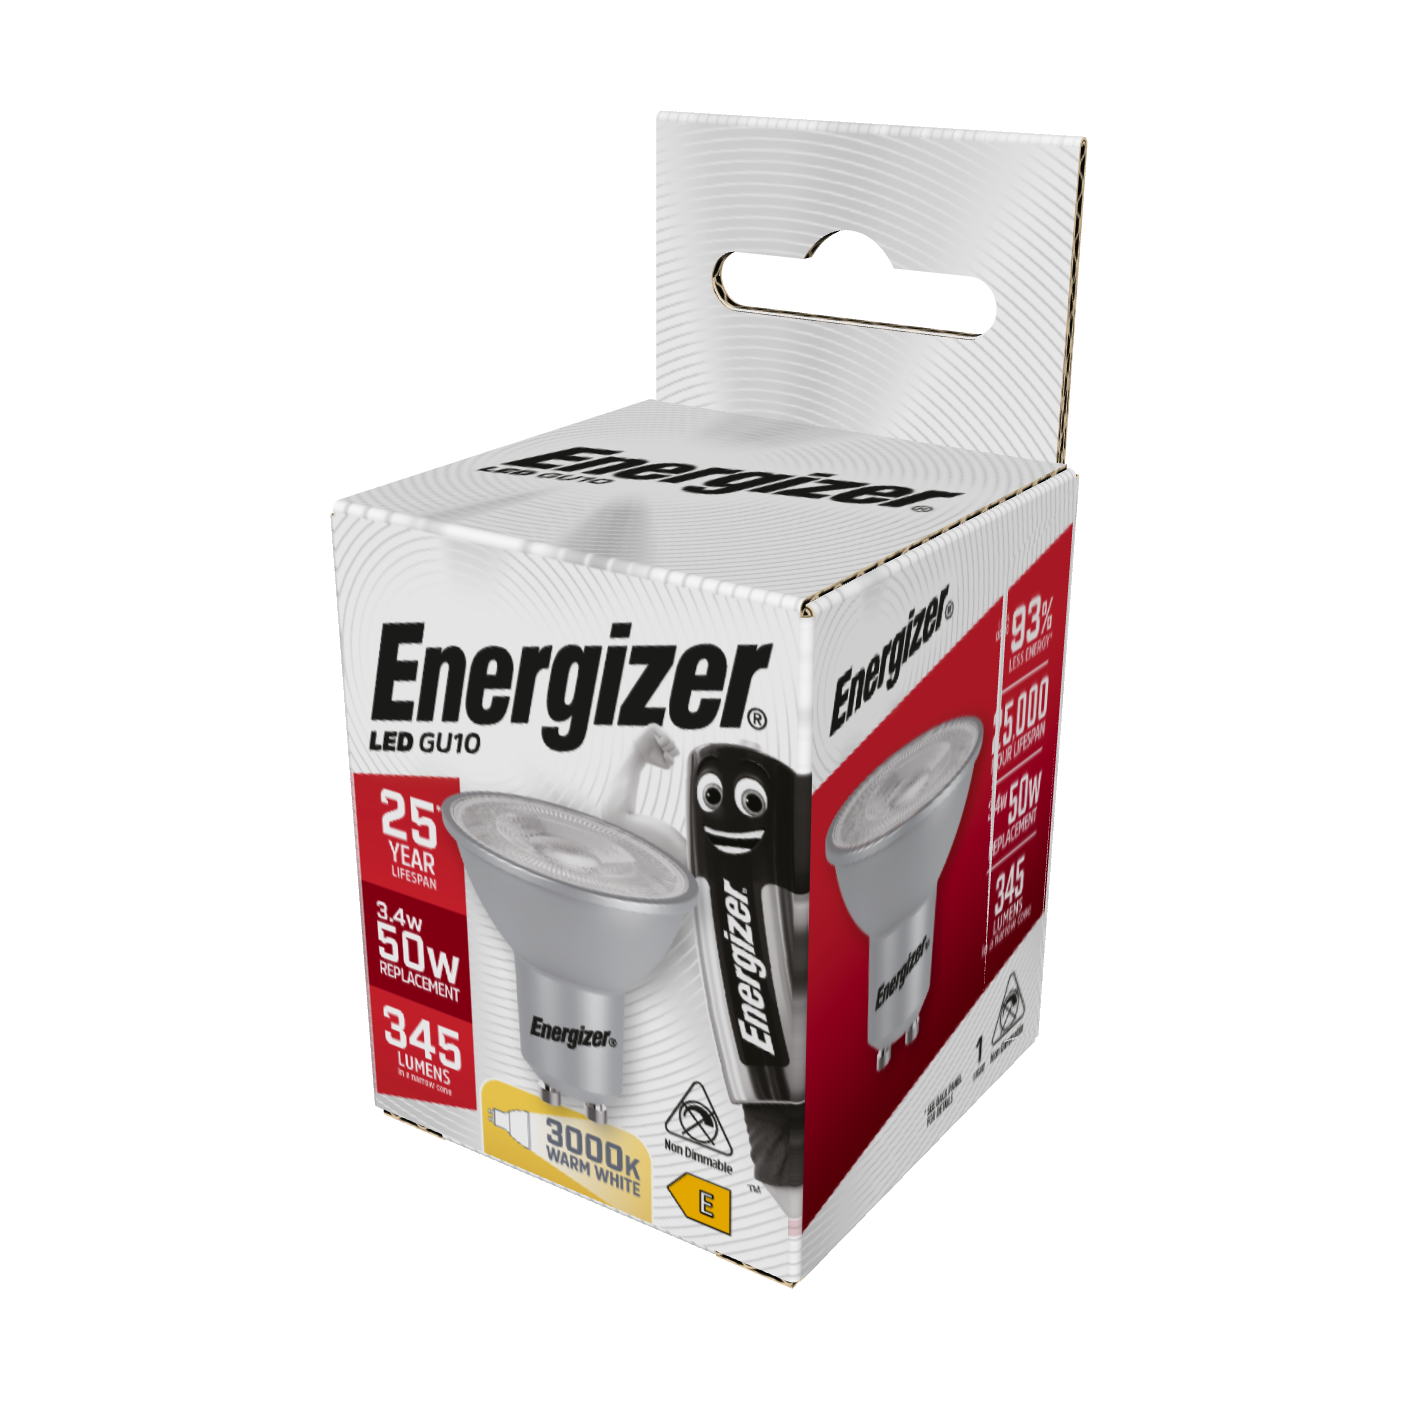 Energizer LED GU10 345lm 3,4W 3.000K (Warmweiß), Packung mit 1 Stück